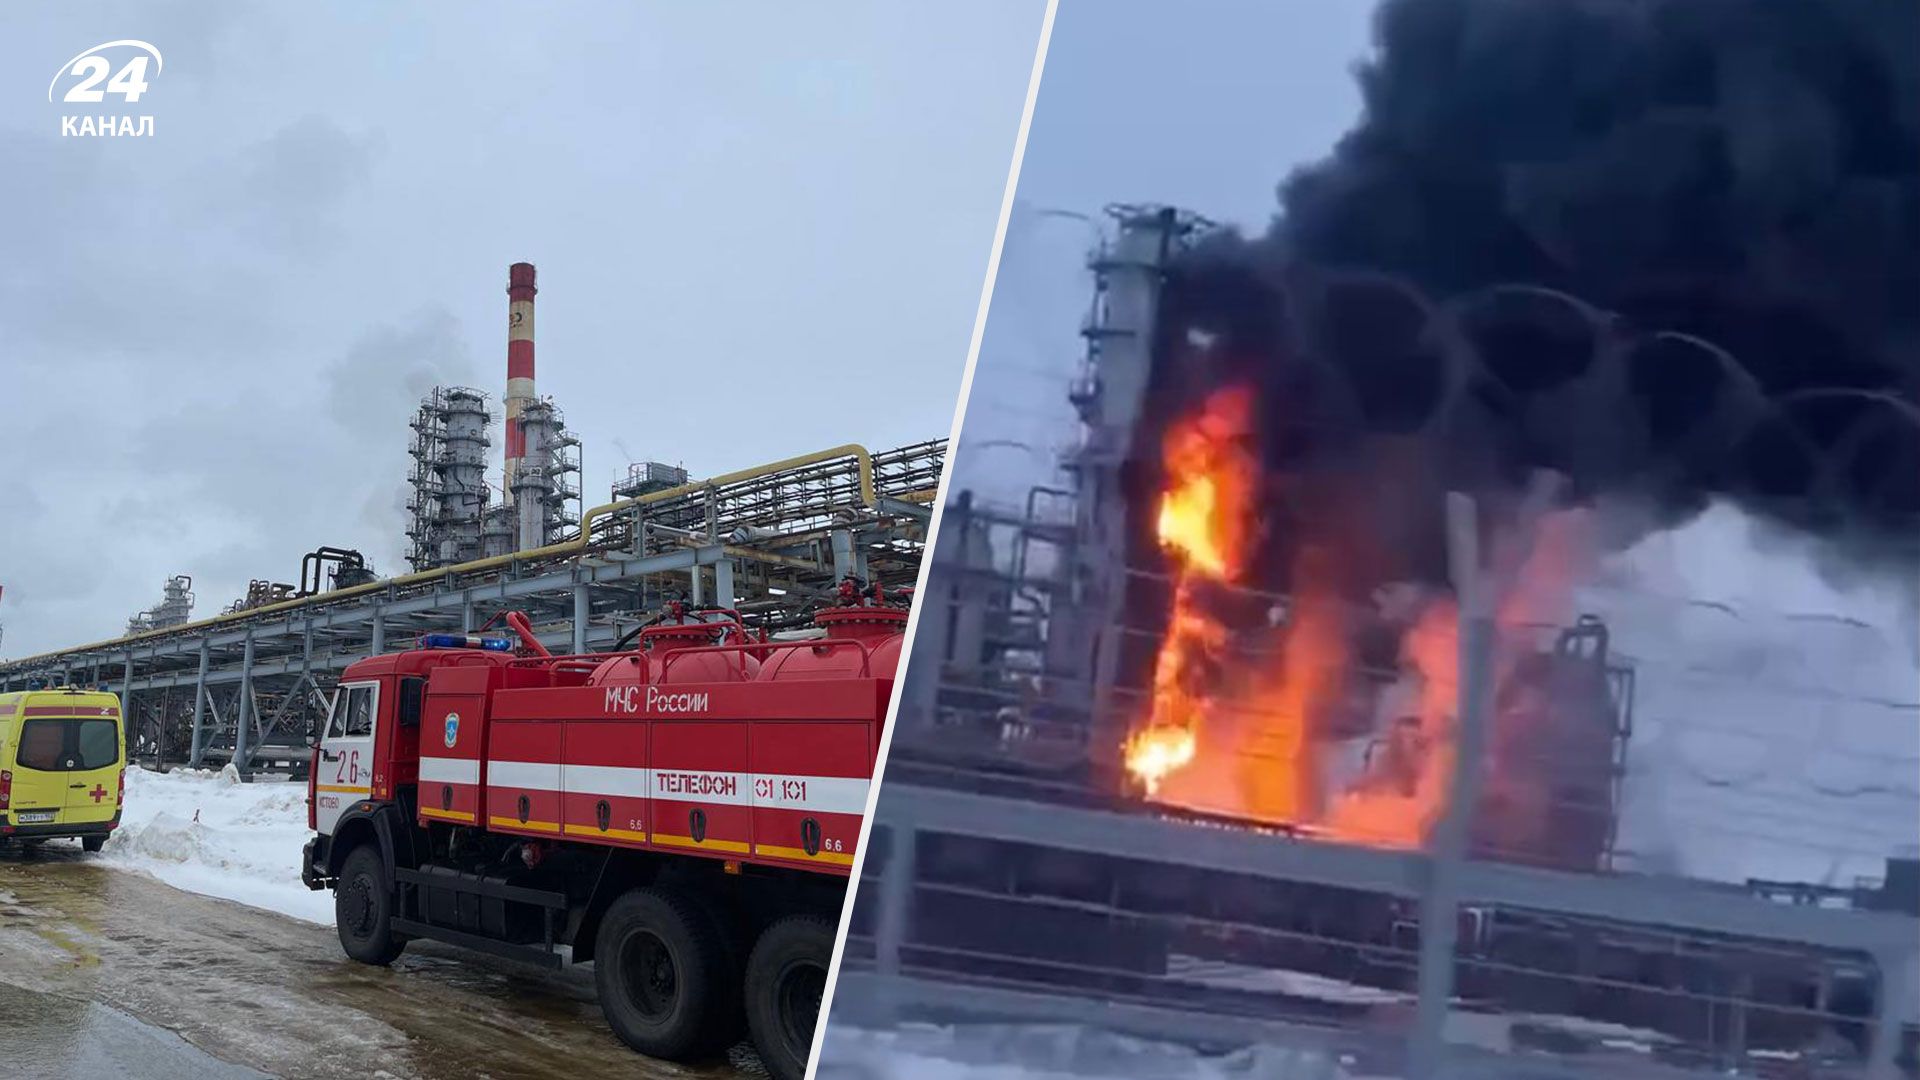 Нефтеперерабатывающий завод "Лукойл" в России имеет серьезные проблемы после атаки дронов, - Reuters - 24 Канал